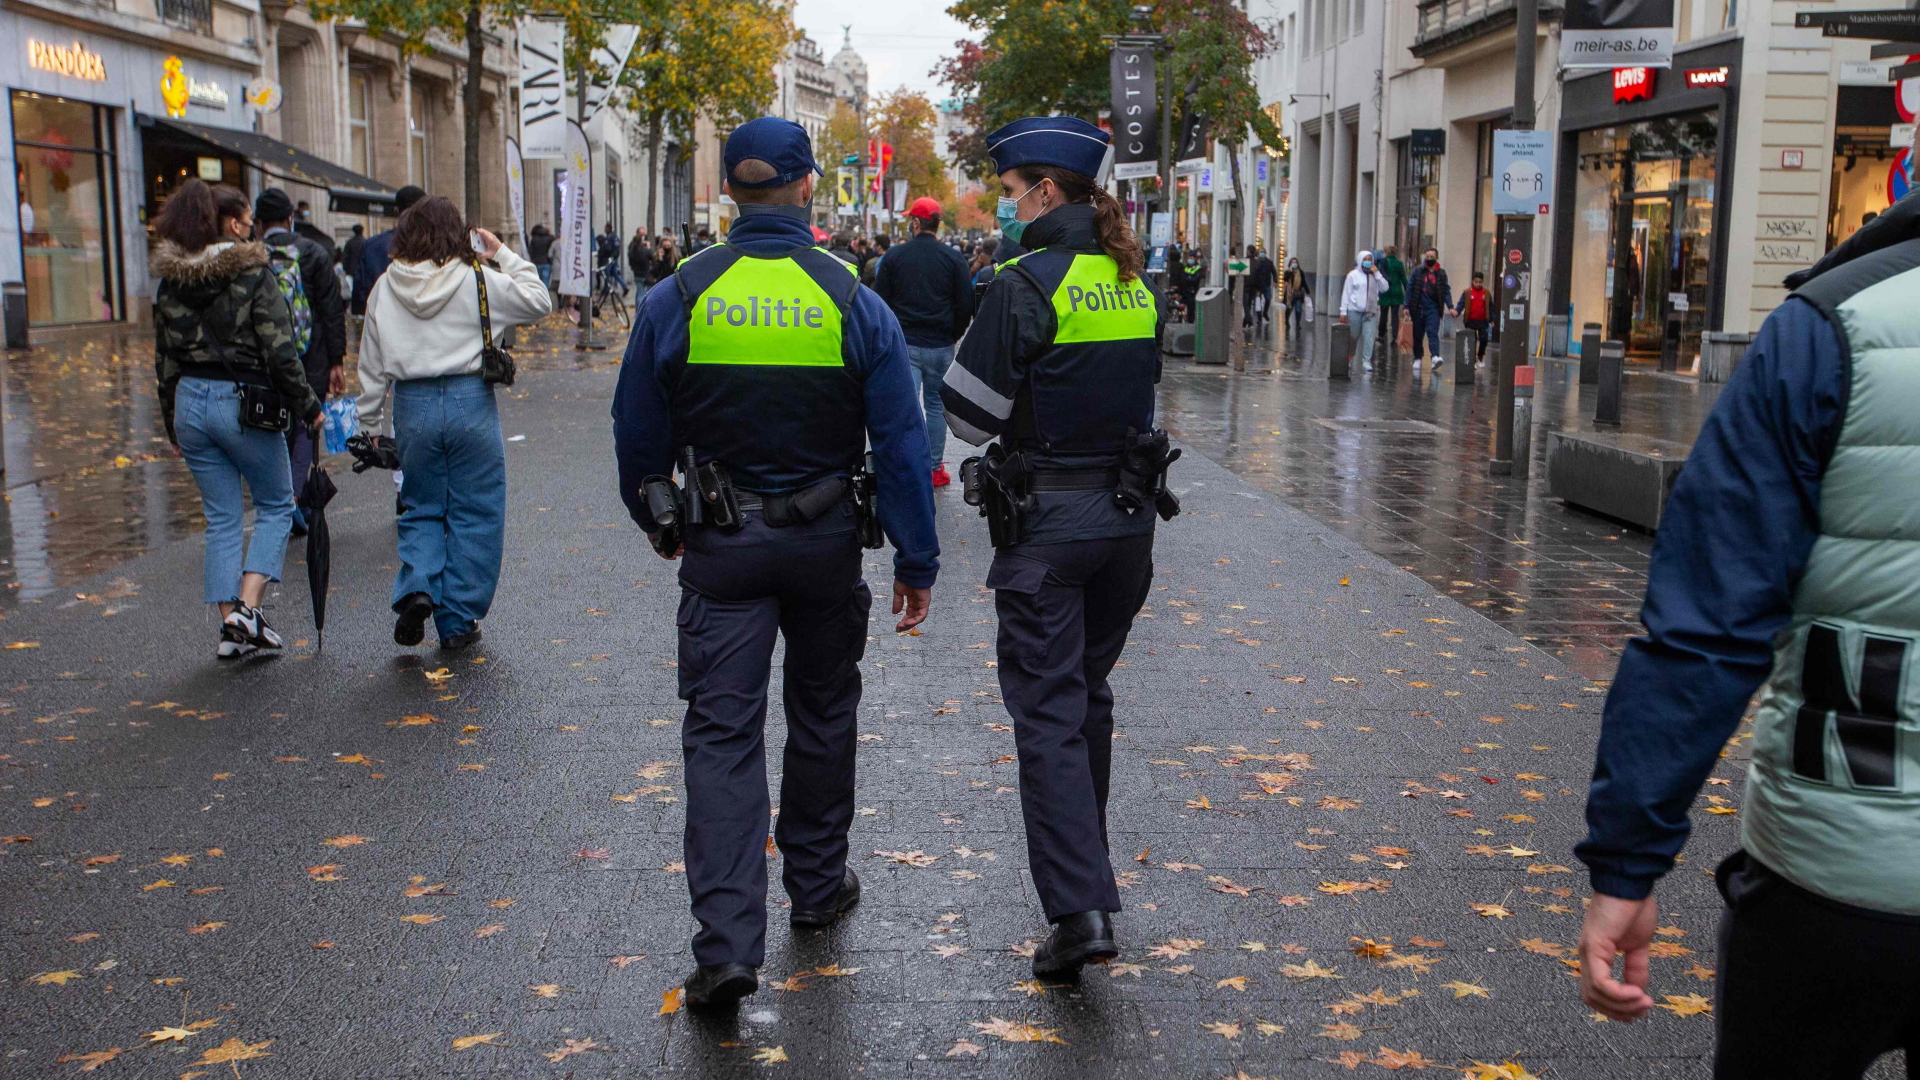 Polizisten auf Streife in der Innenstadt von Antwerpen | AFP